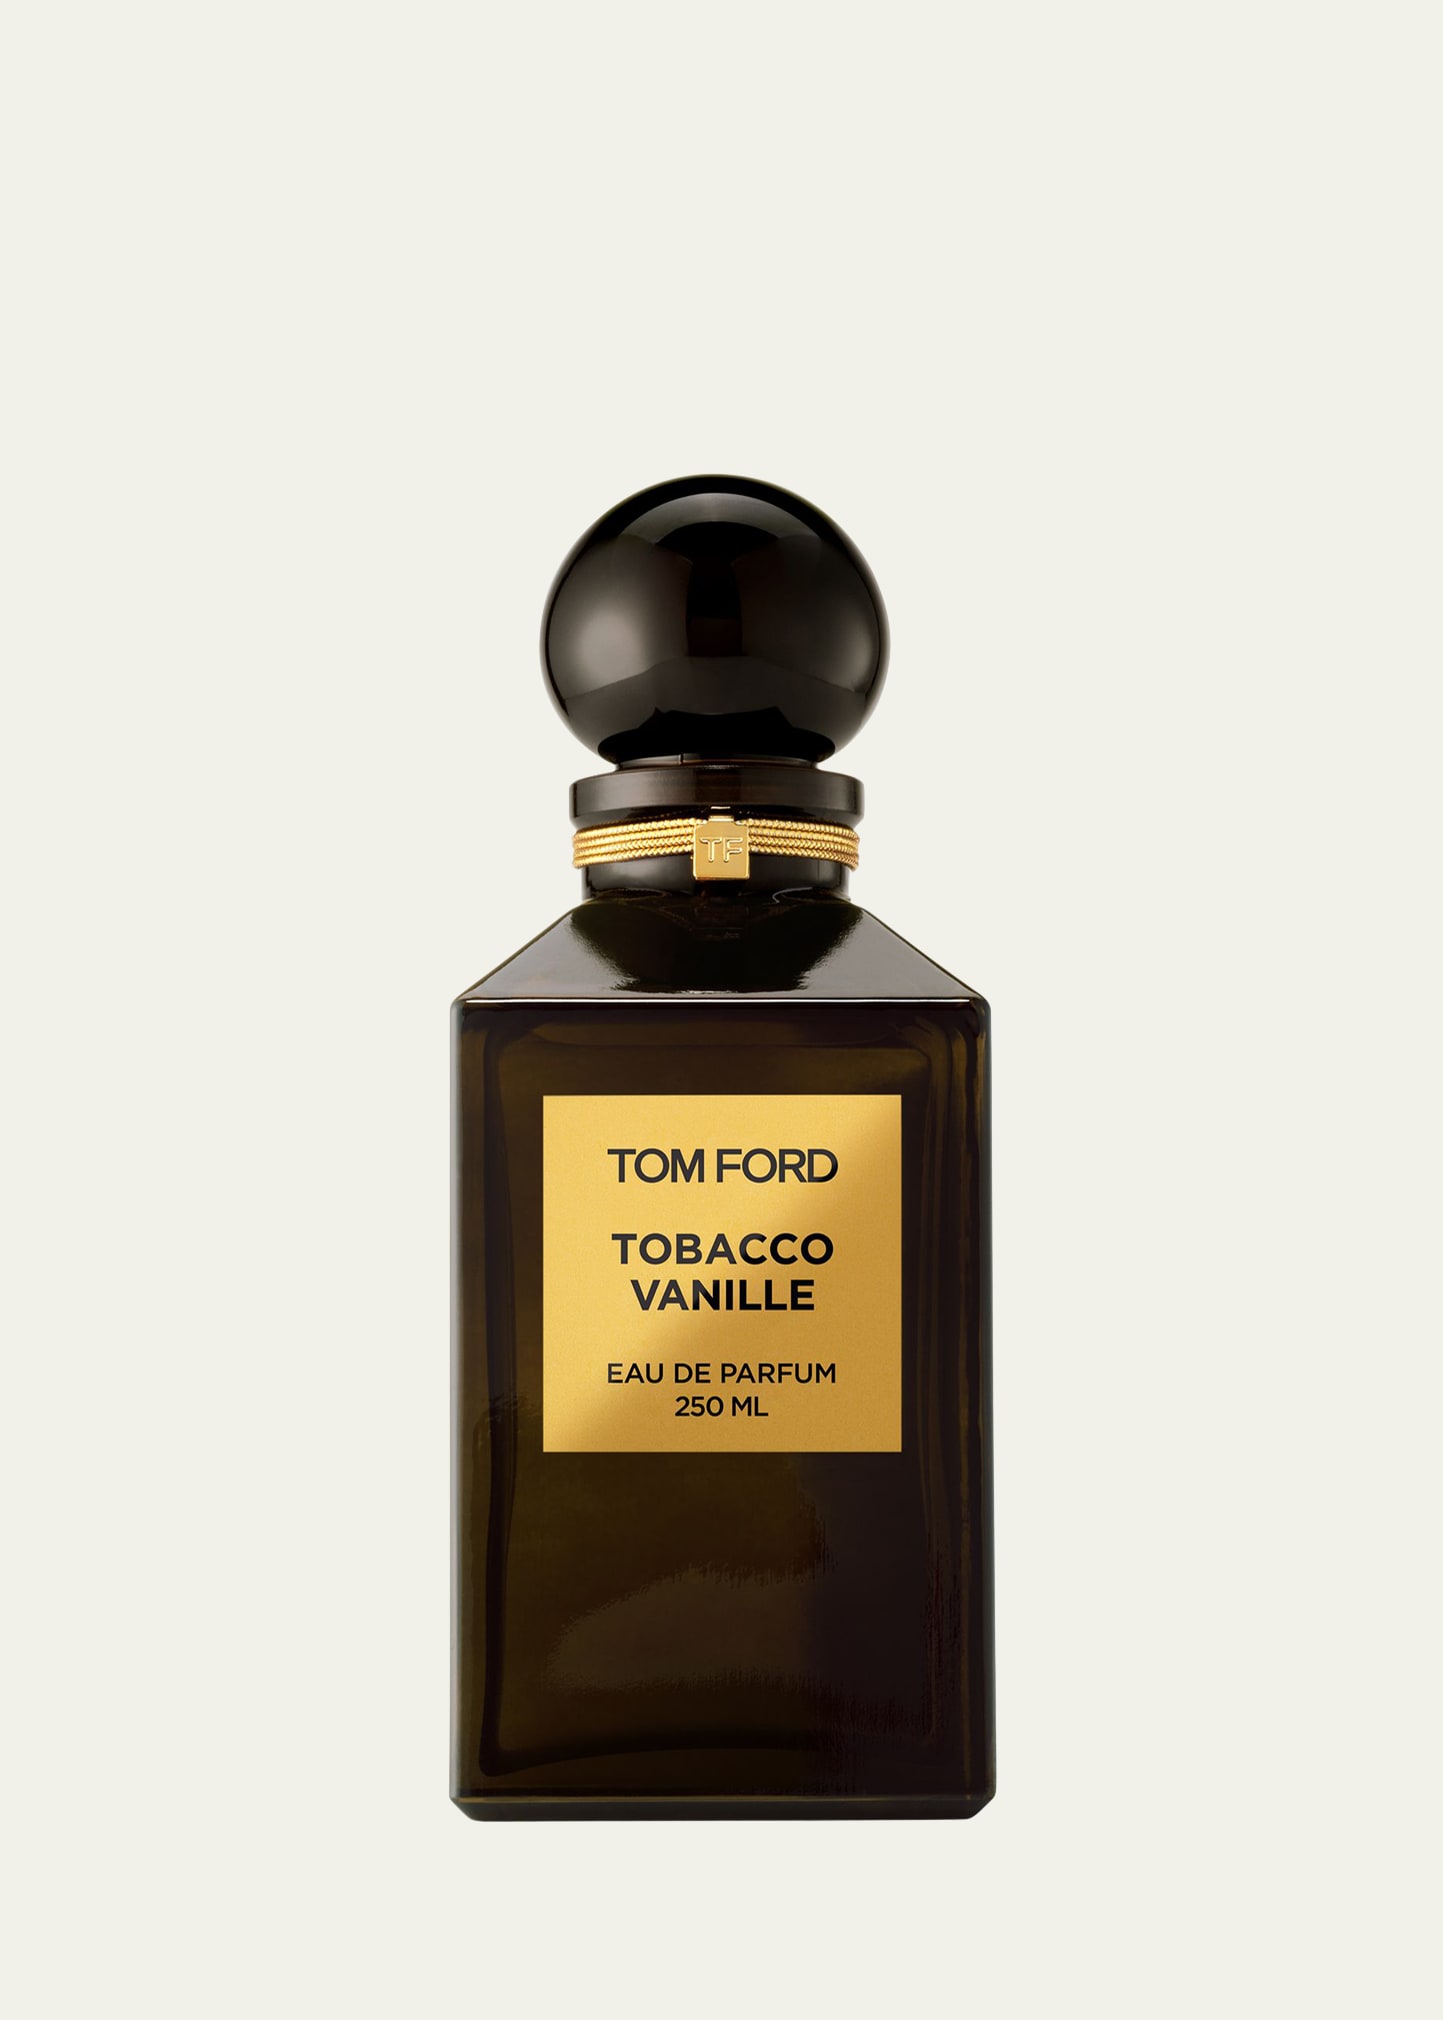 Tobacco Vanille Eau de Parfum Fragrance 250ml Decanter